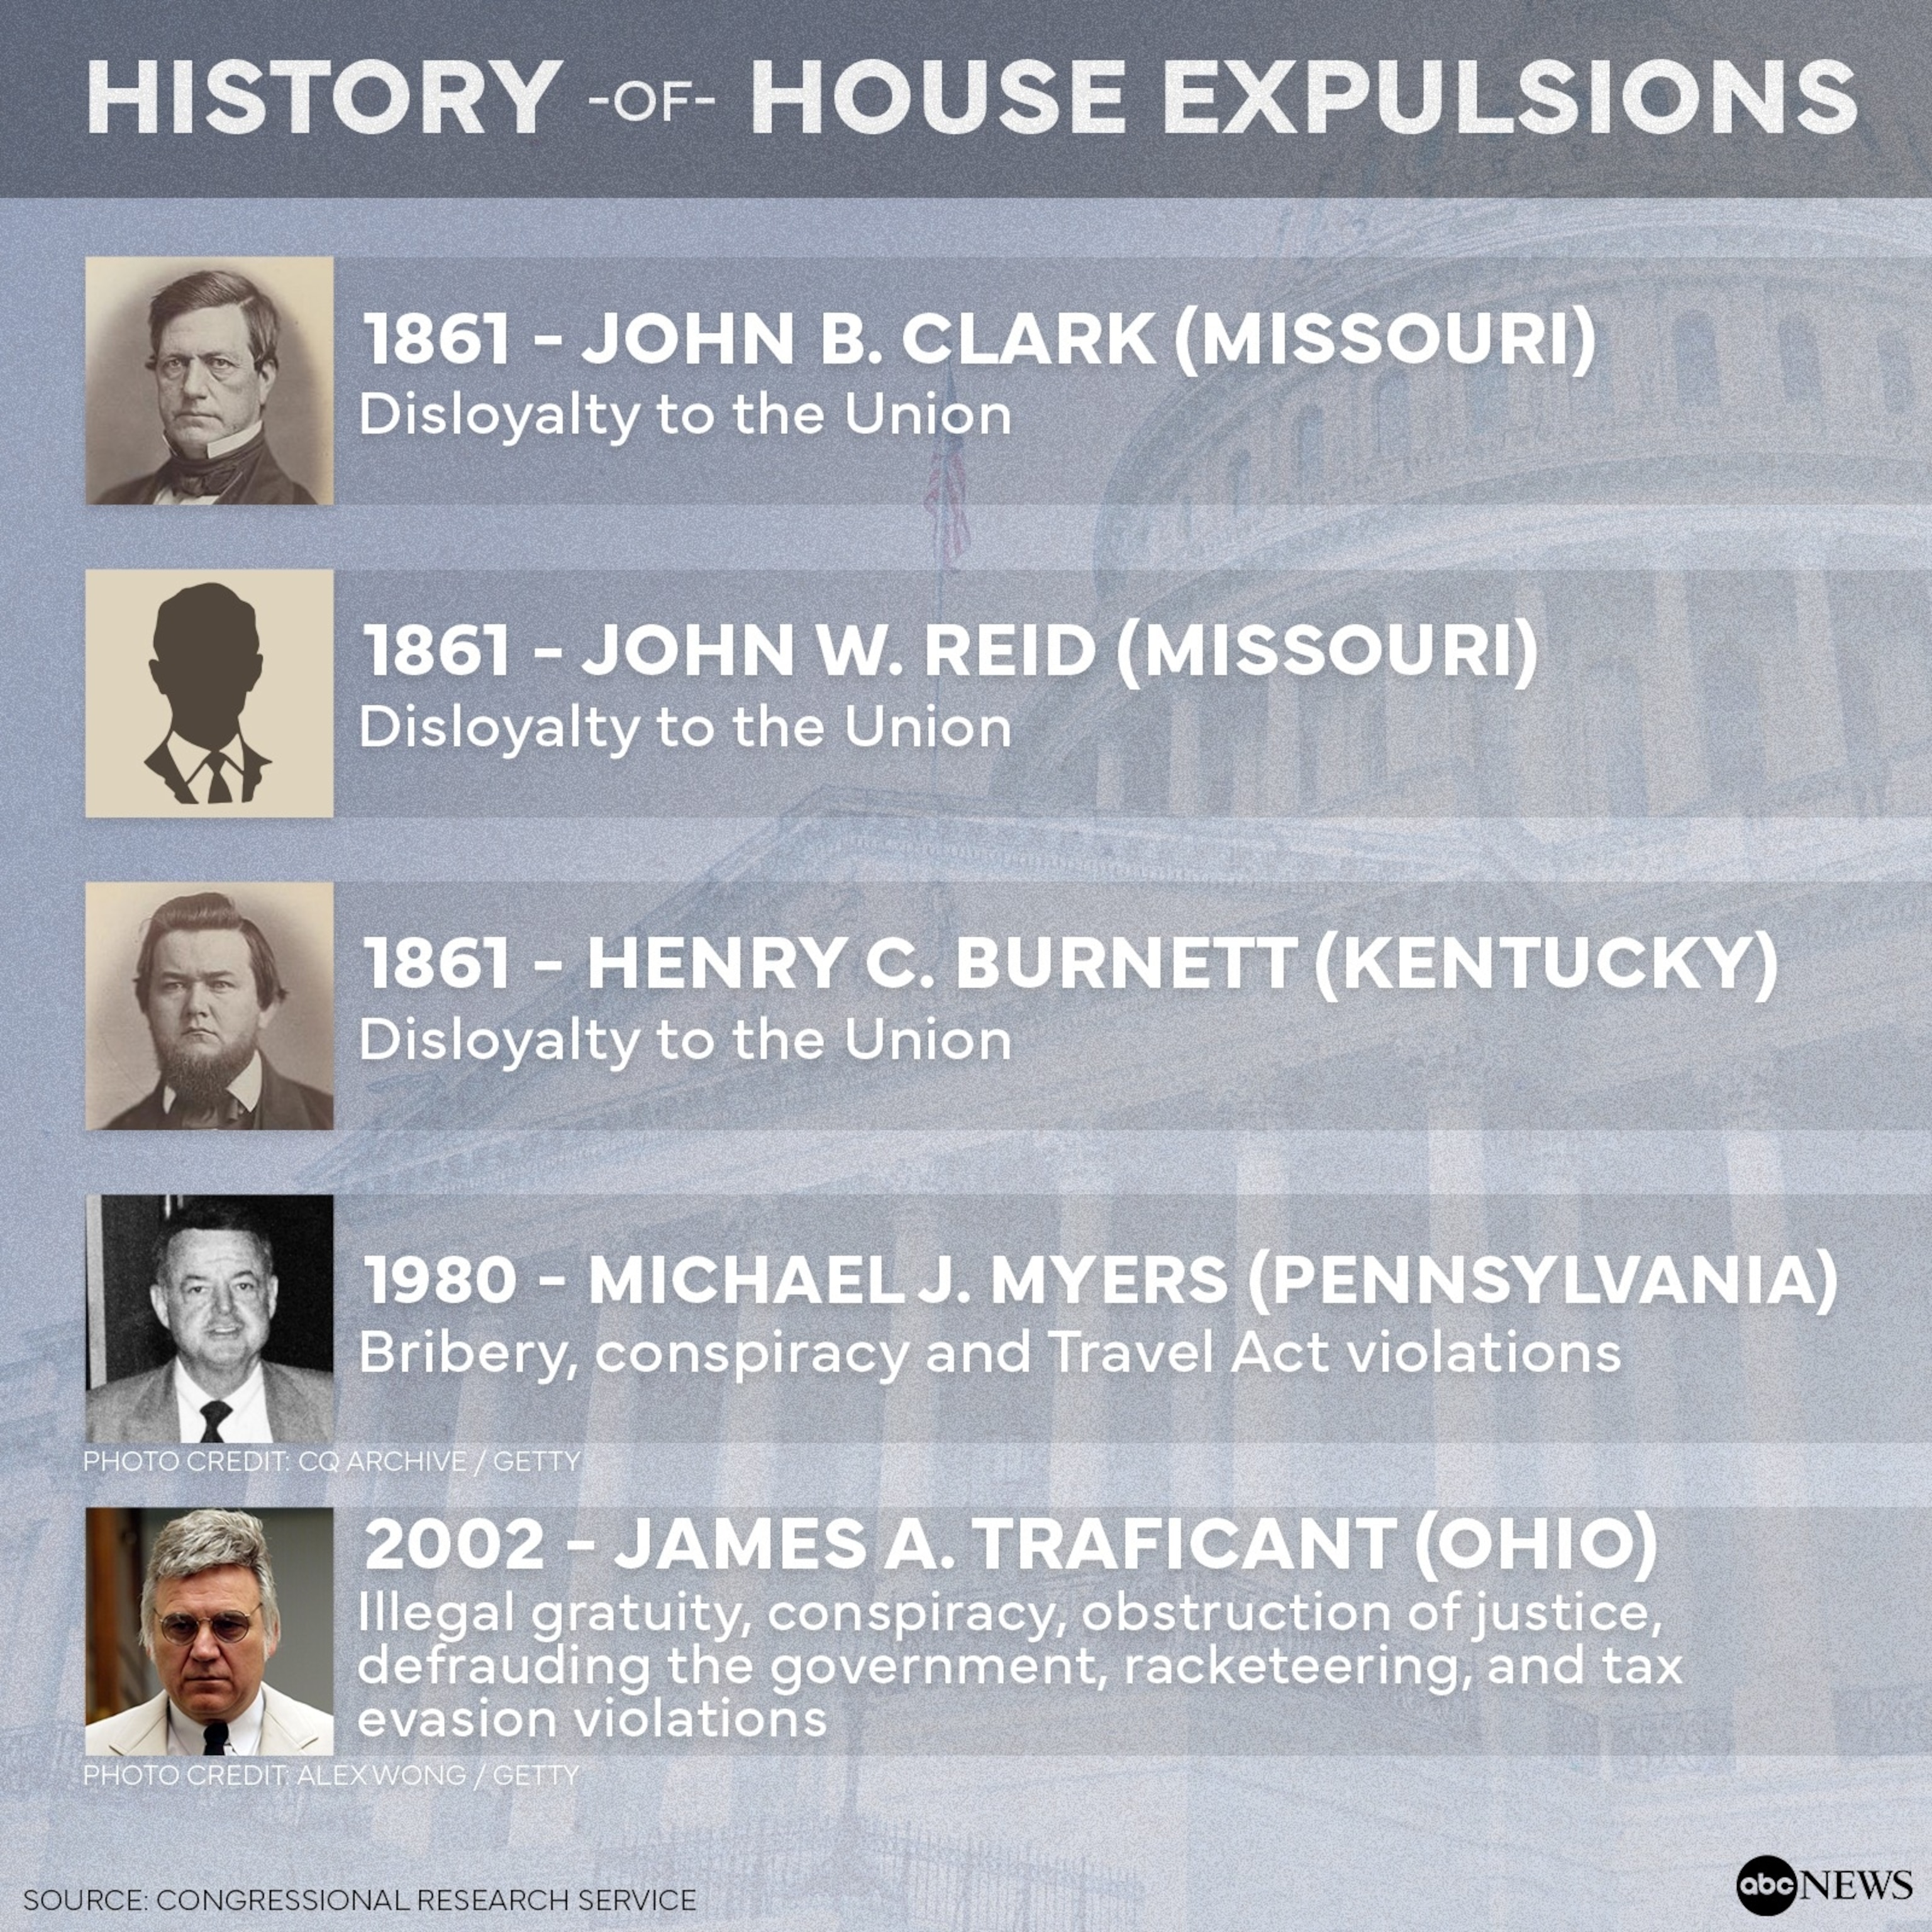 PHOTO: History of House Expulsions